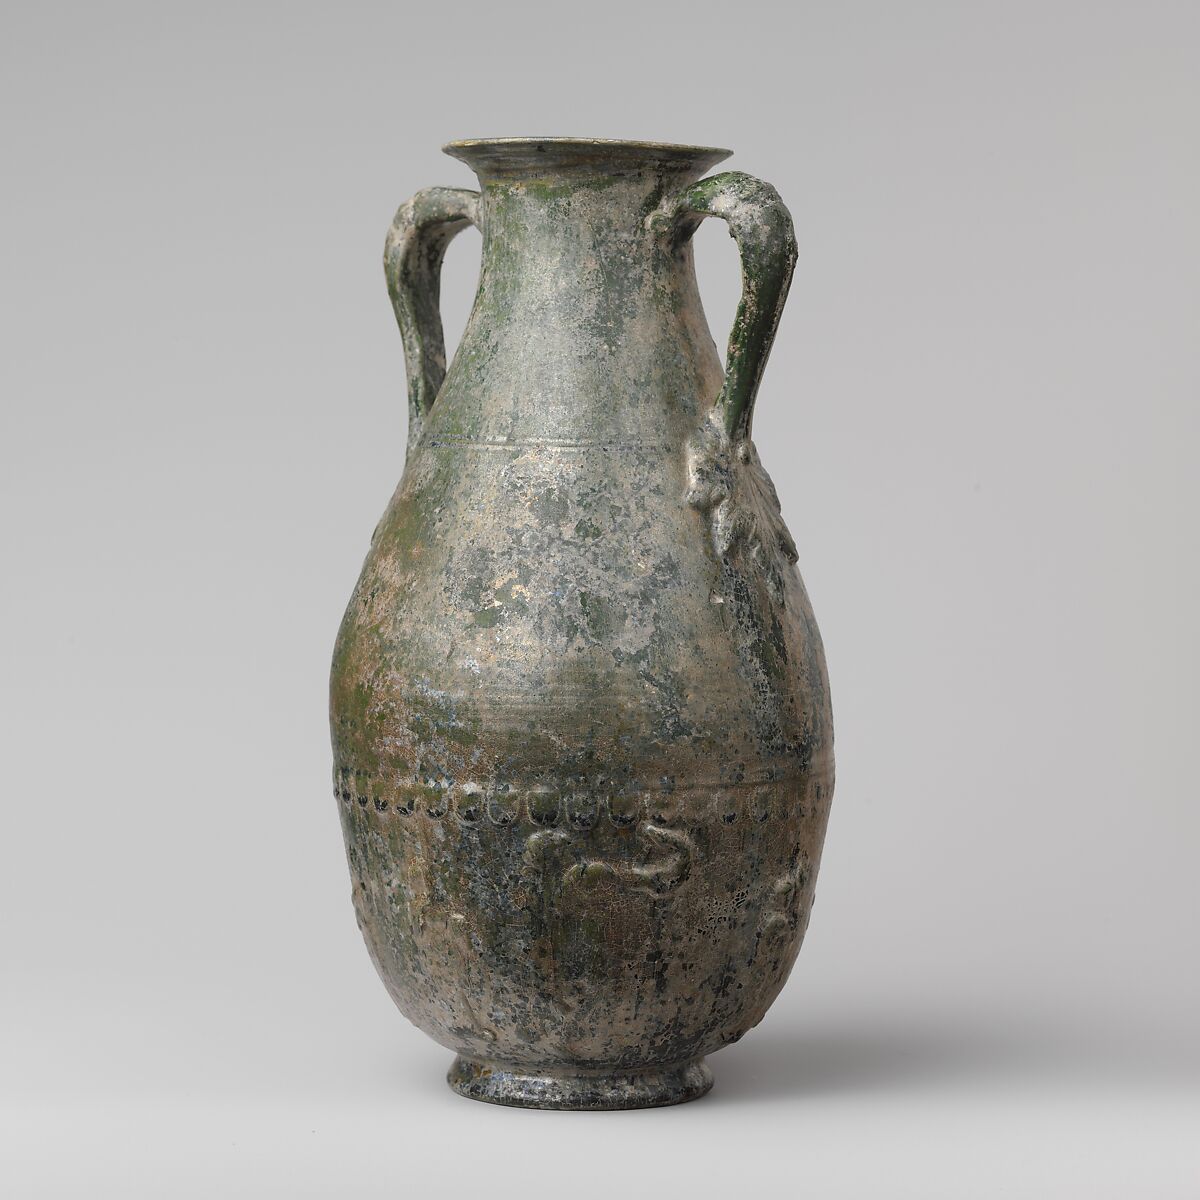 Terracotta amphora (jar), Terracotta, Roman 